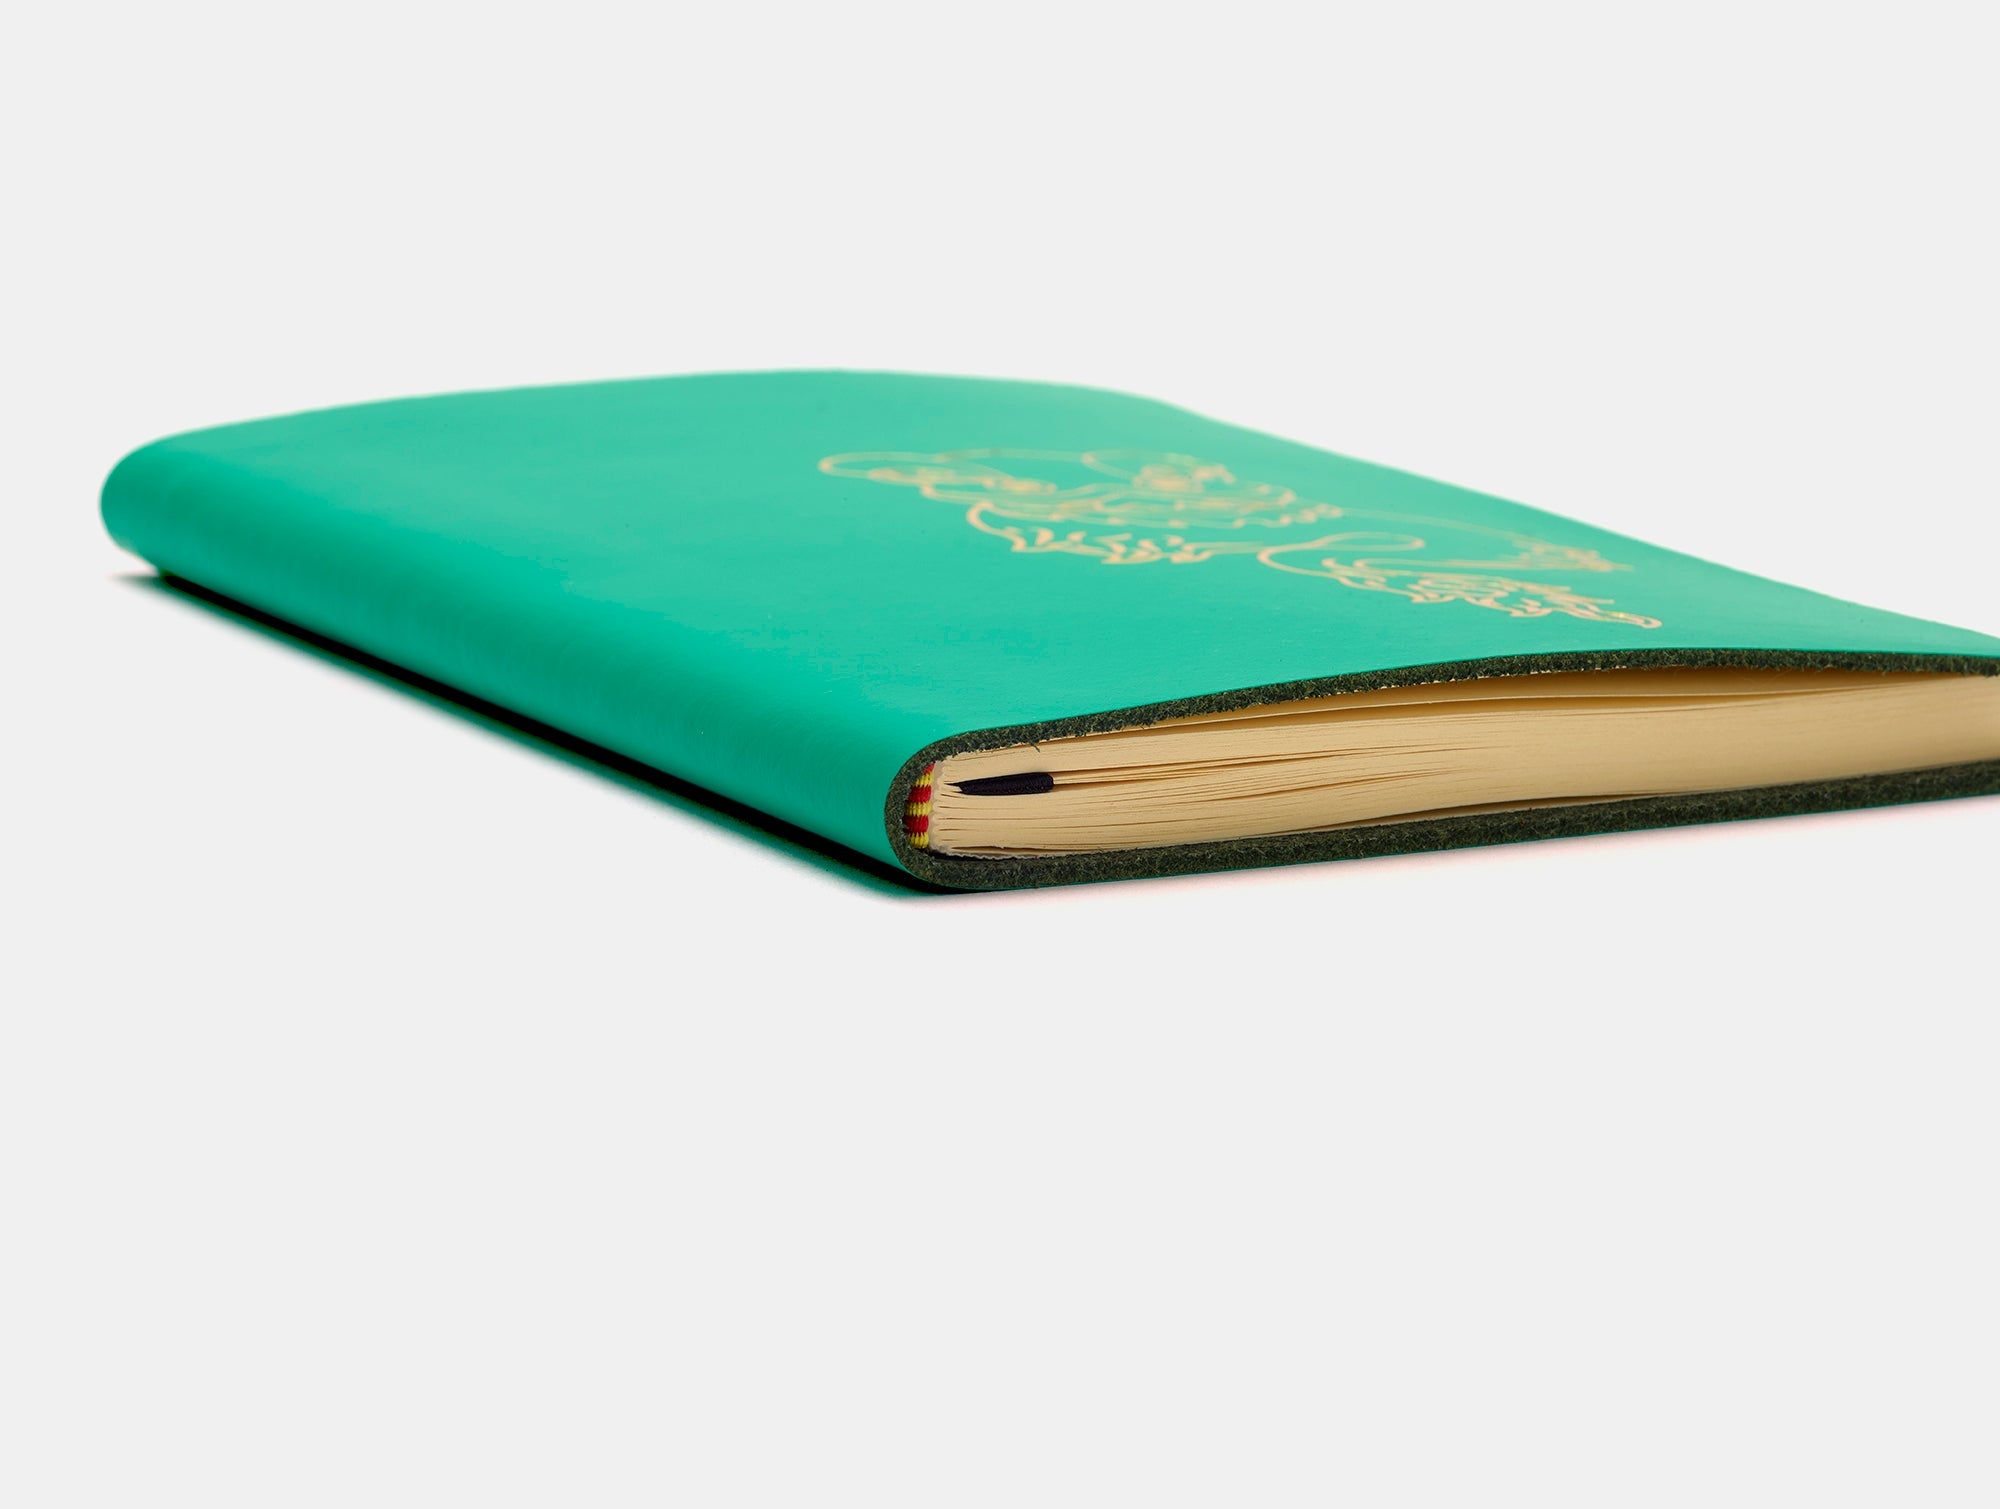 The Lunar New Year A6 Notebook - Emerald Green